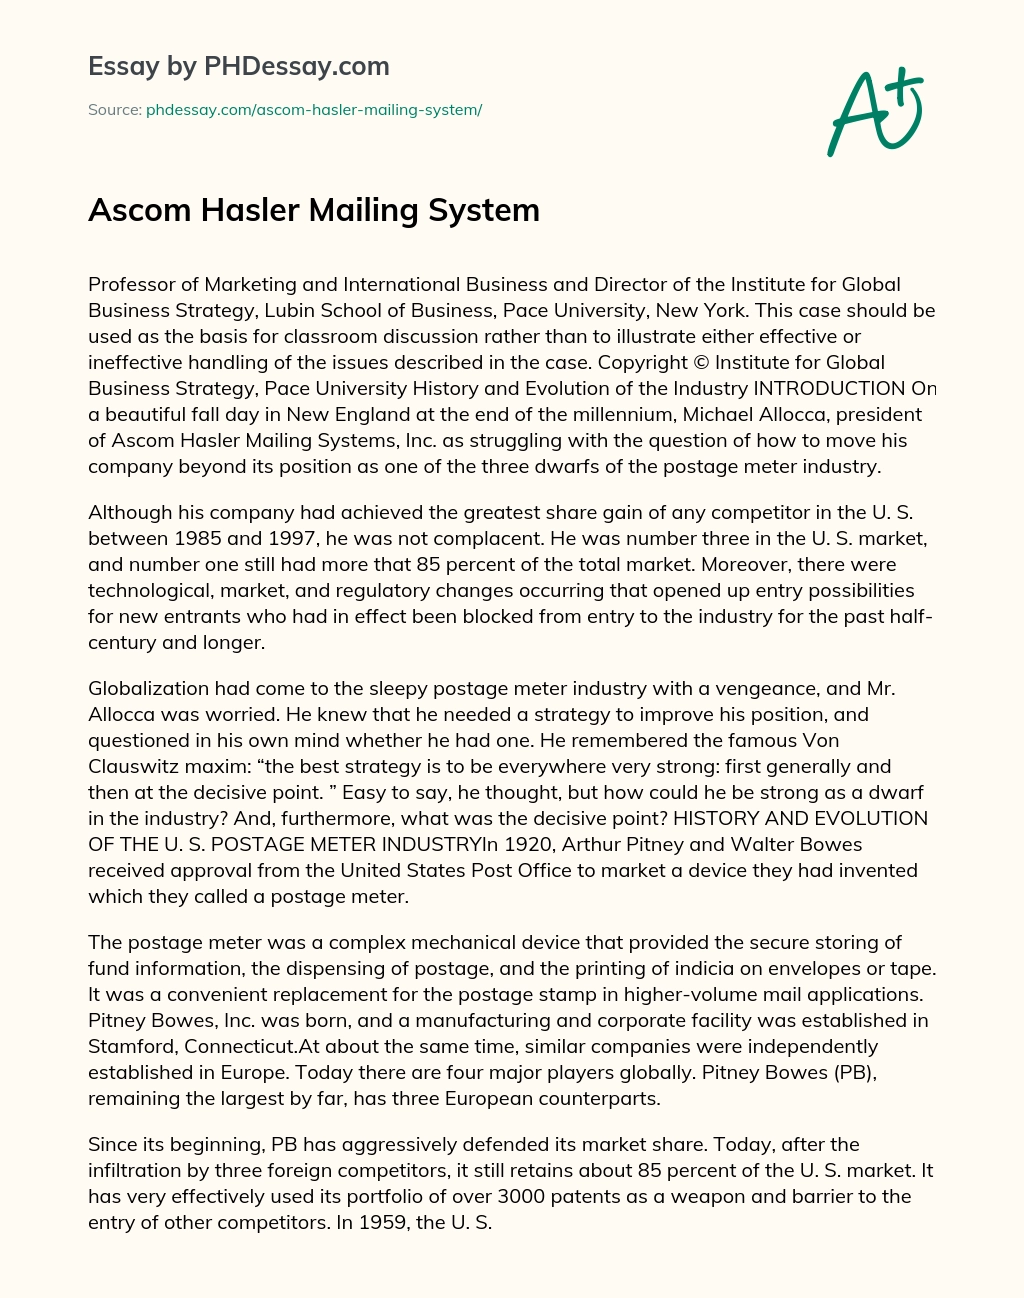 Ascom Hasler Mailing System essay